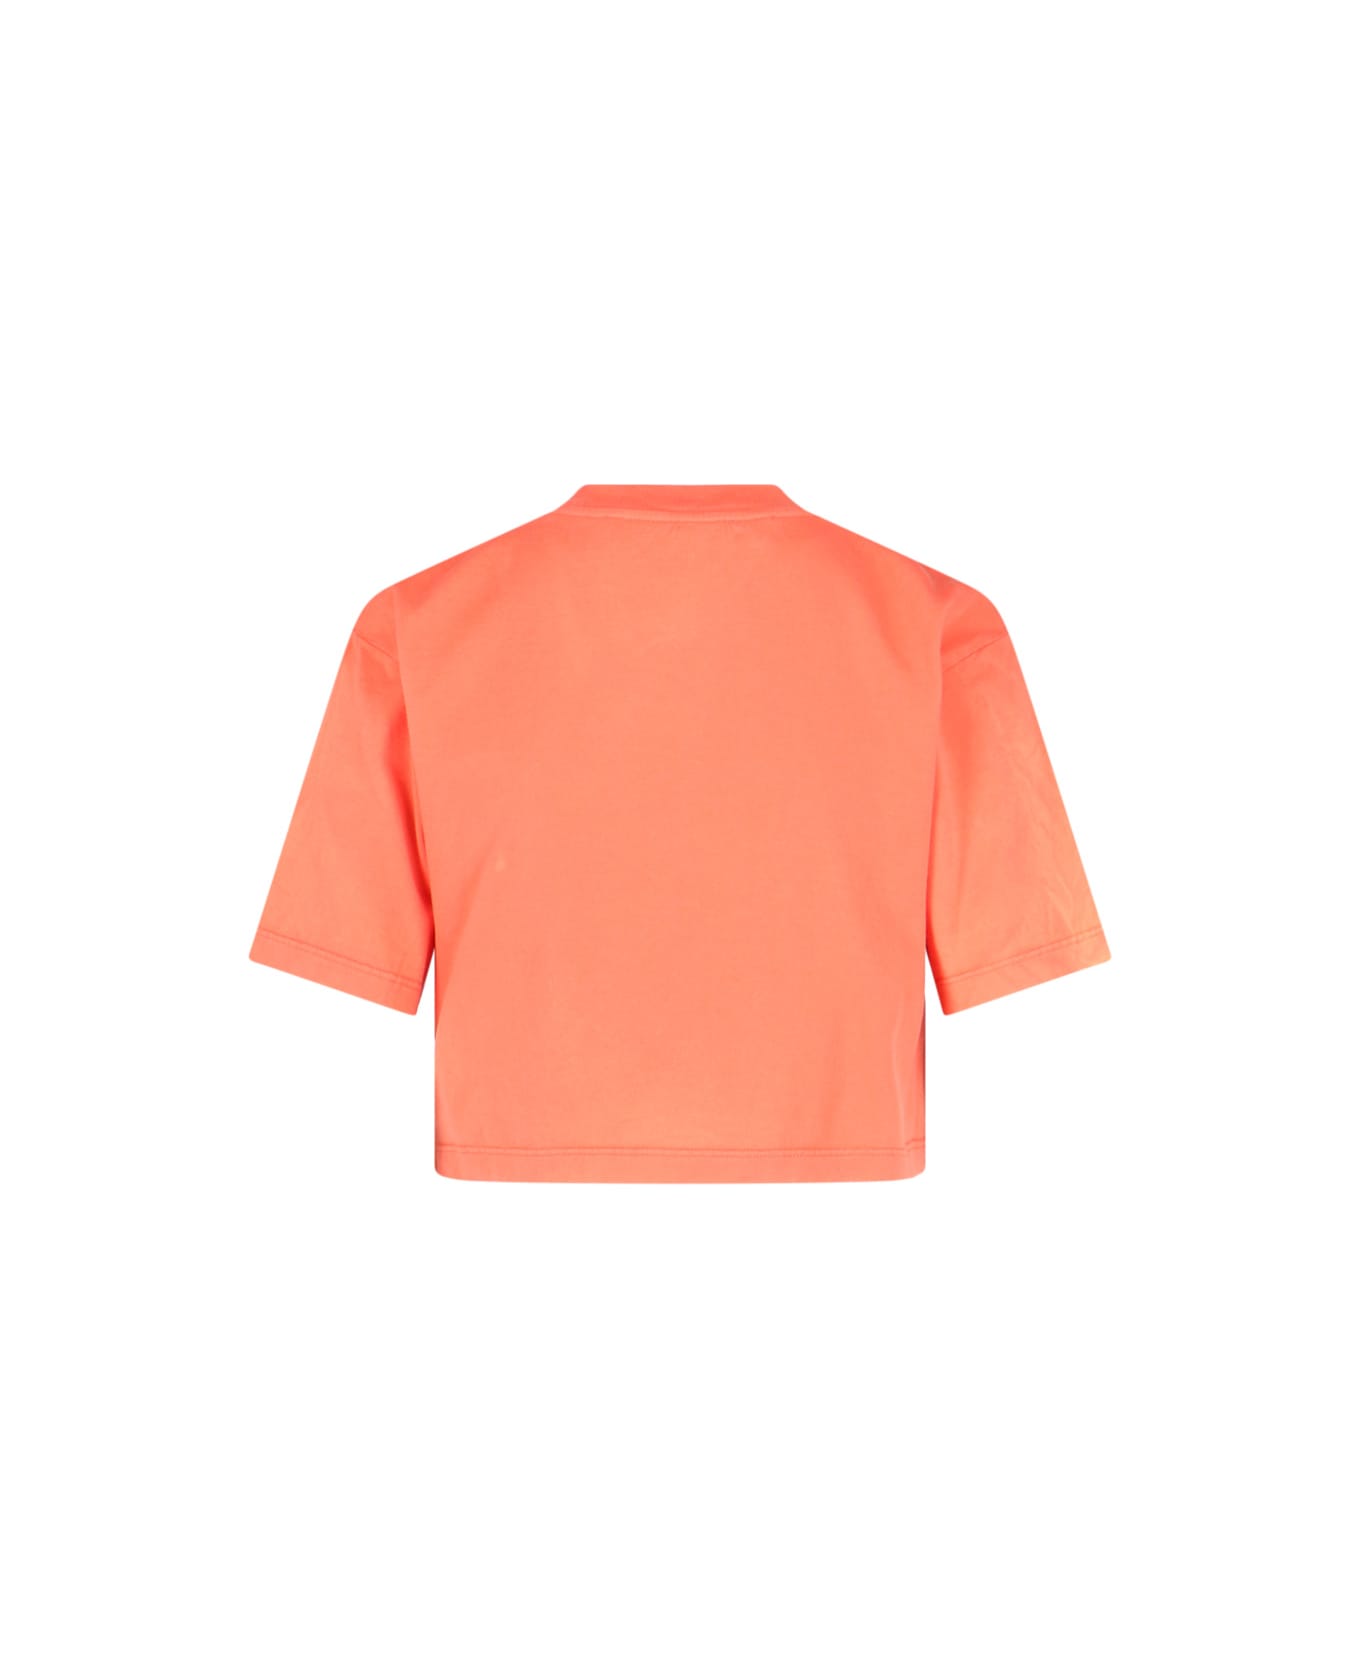 Off-White T-Shirt - Orange